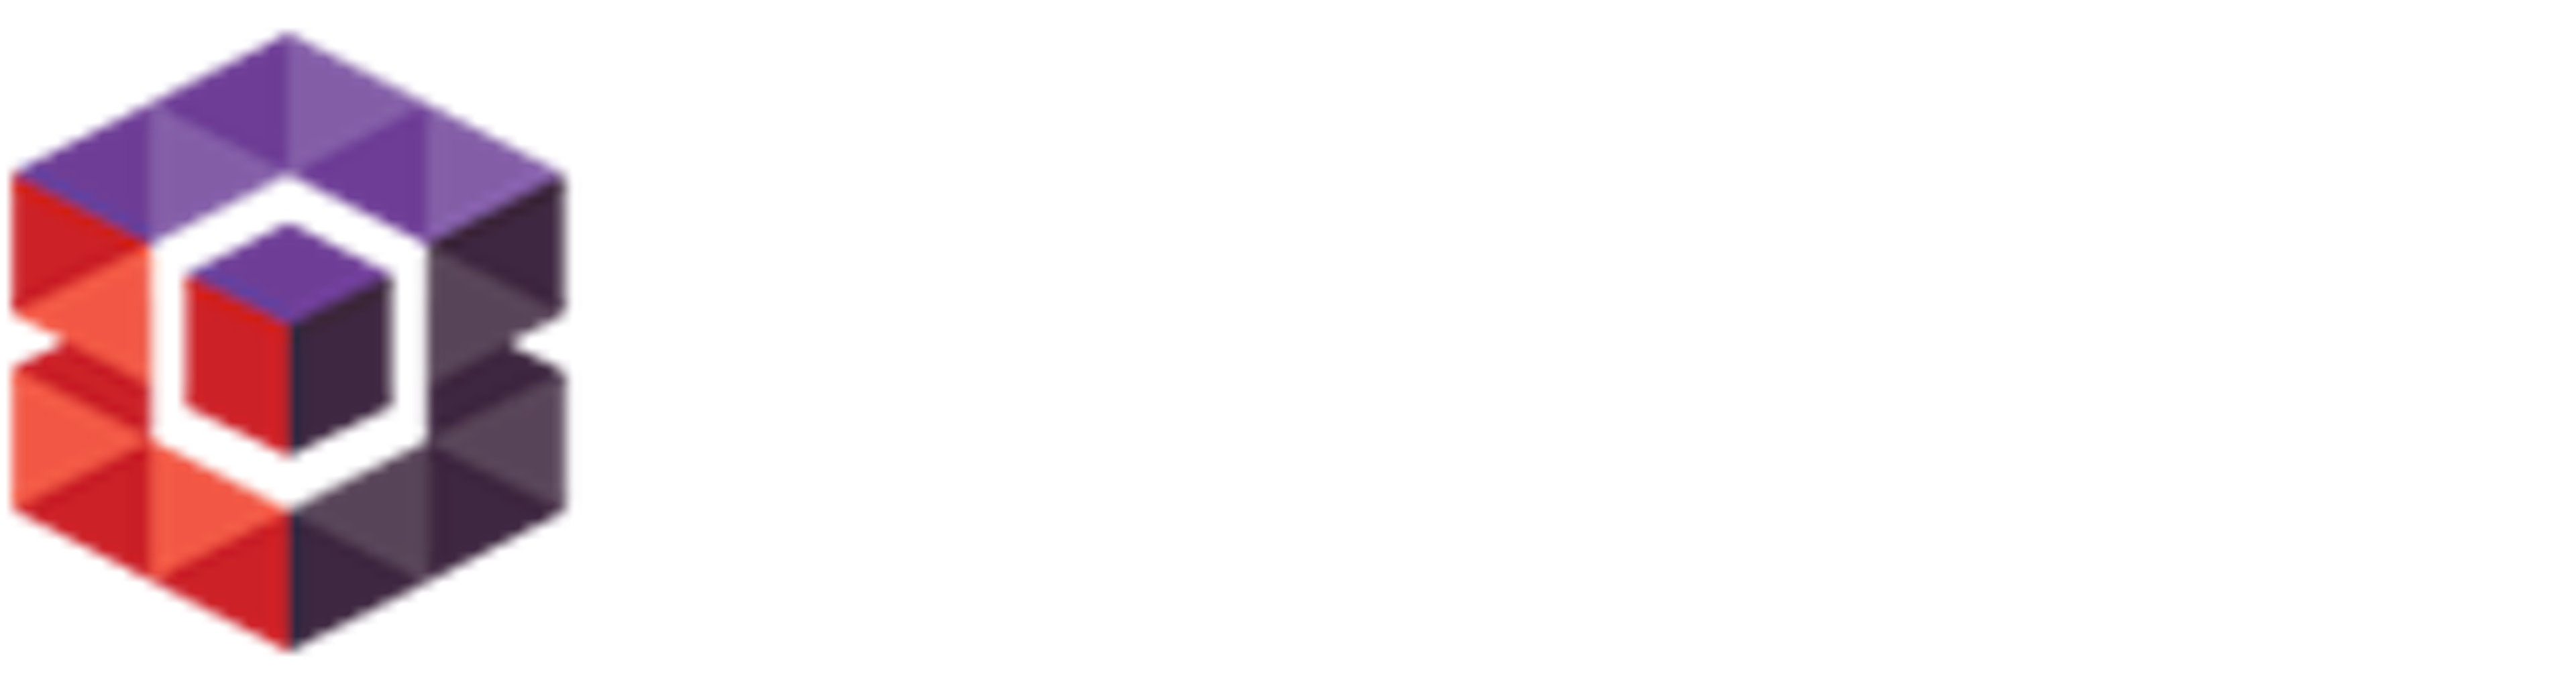 Soterosoft.com